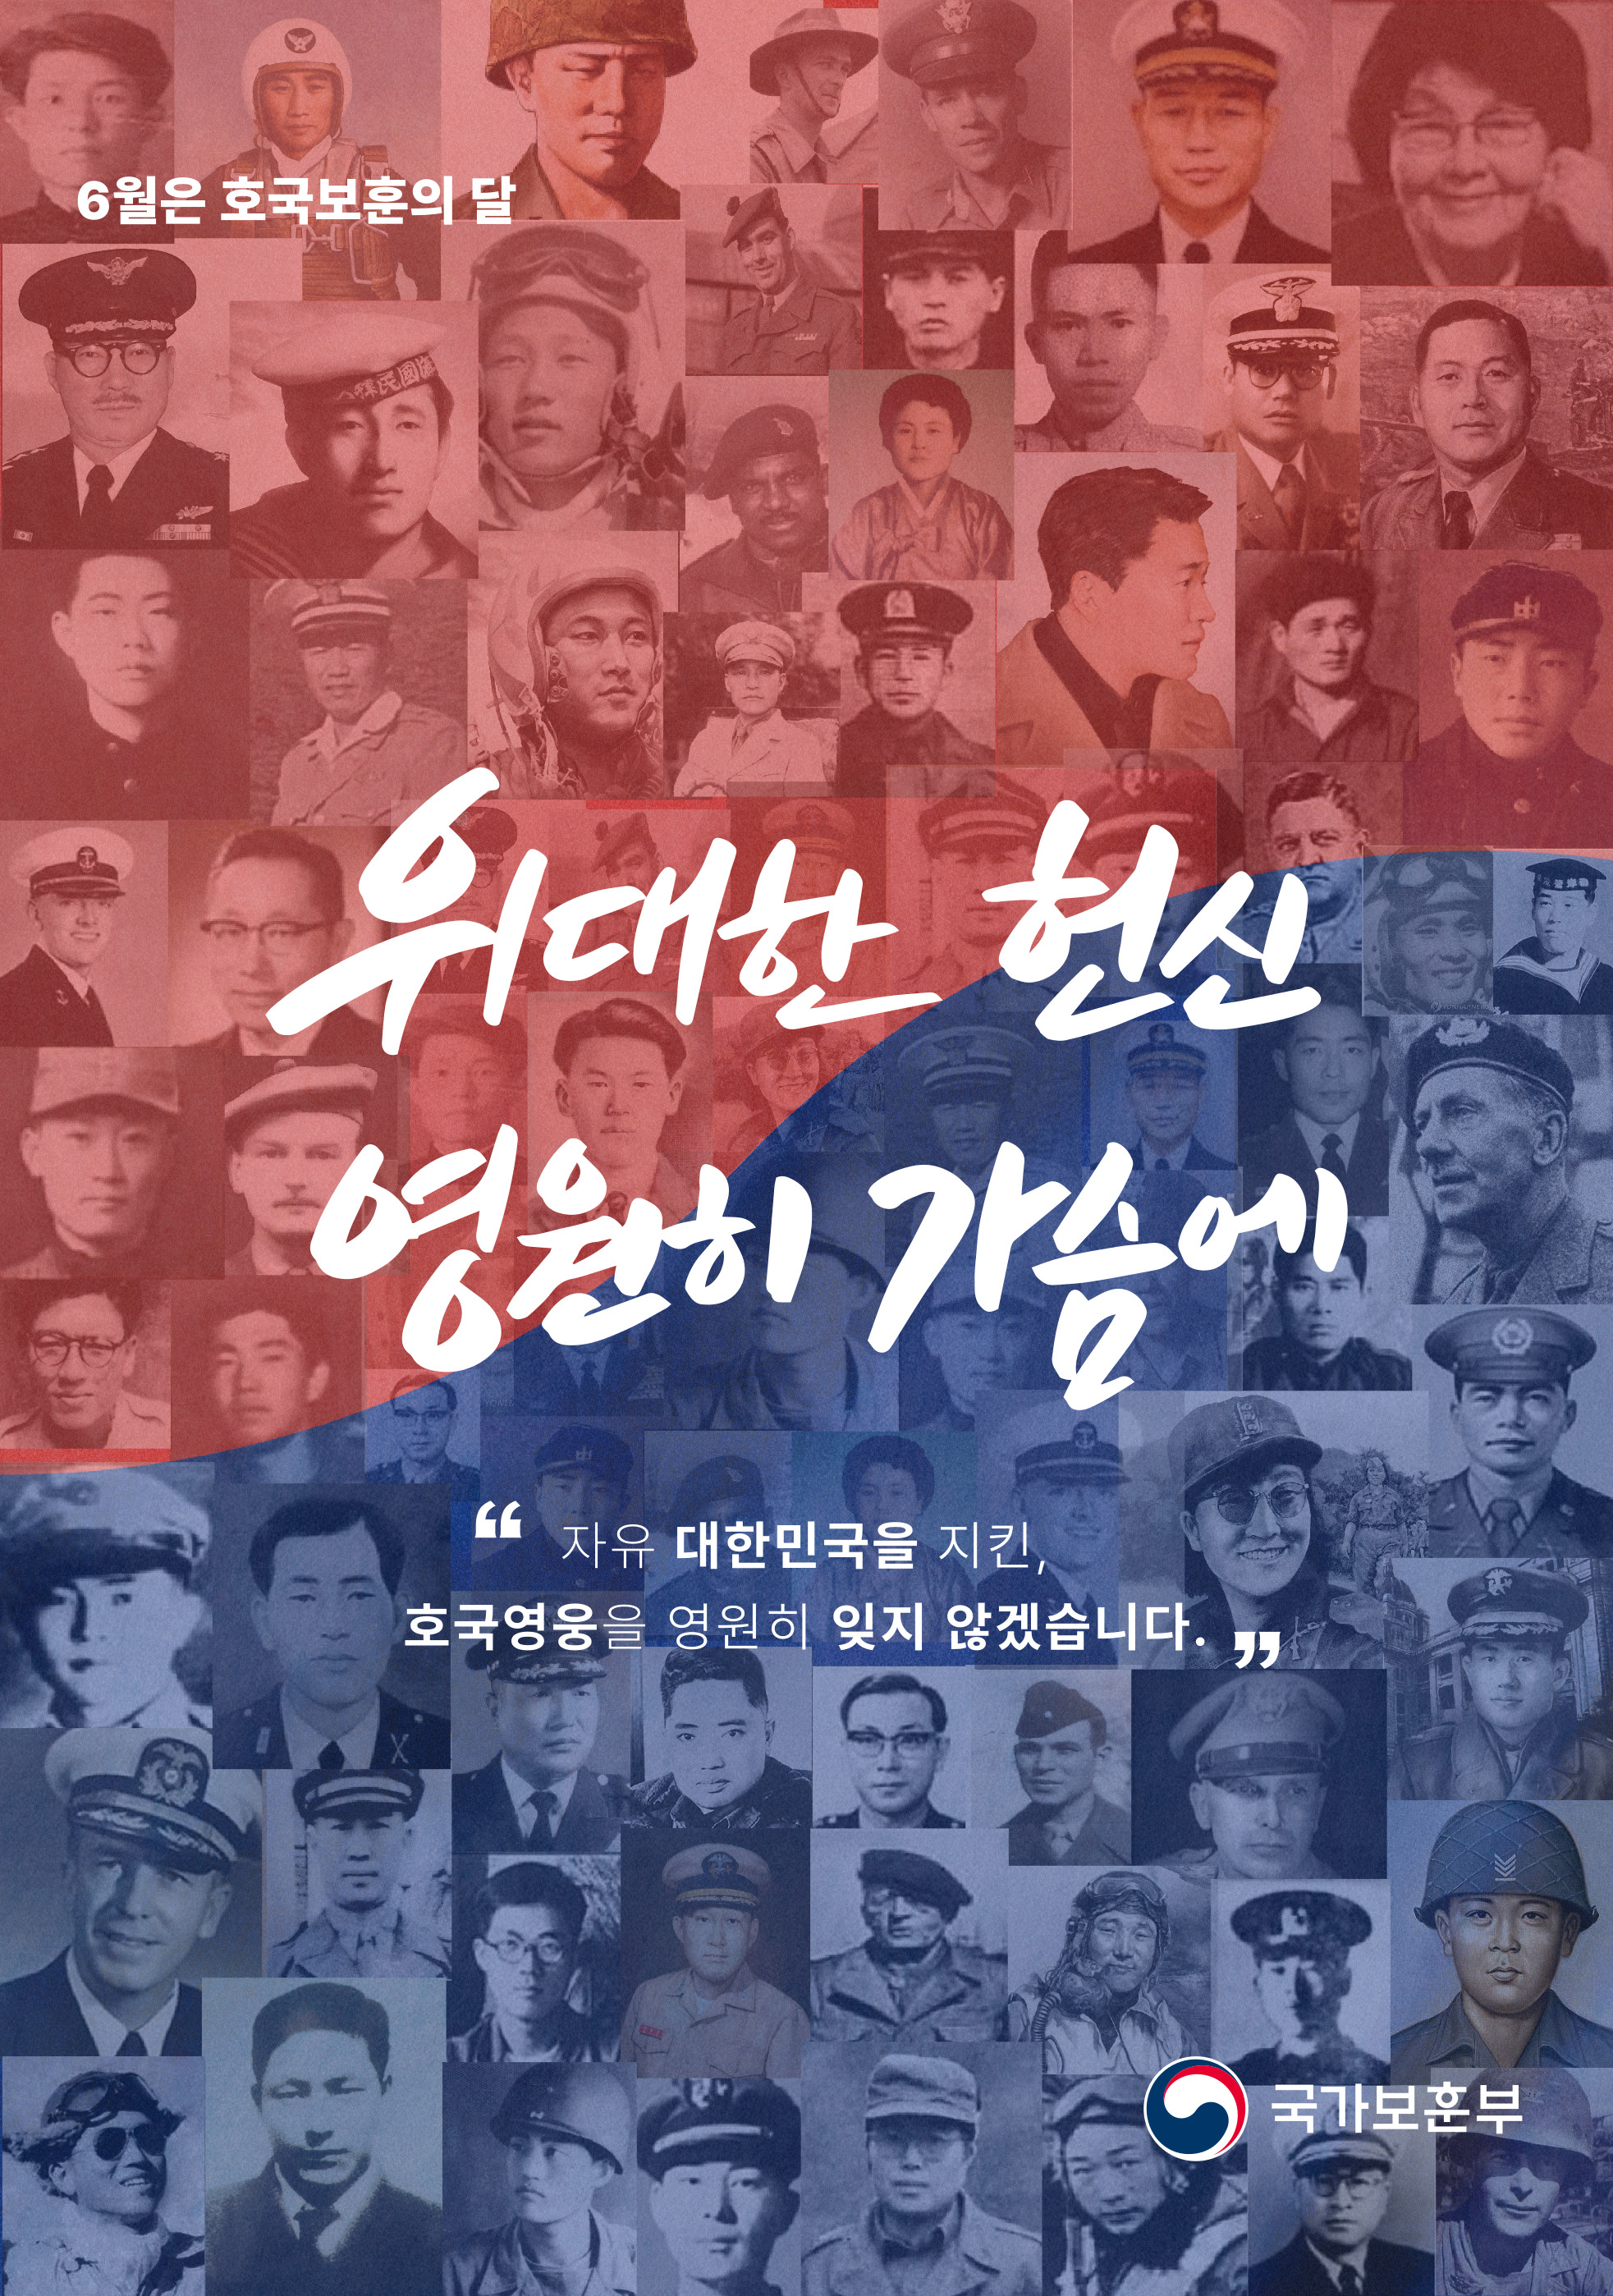 국가보훈부_포스터(520x740)_2023최종 - 복사본.jpg